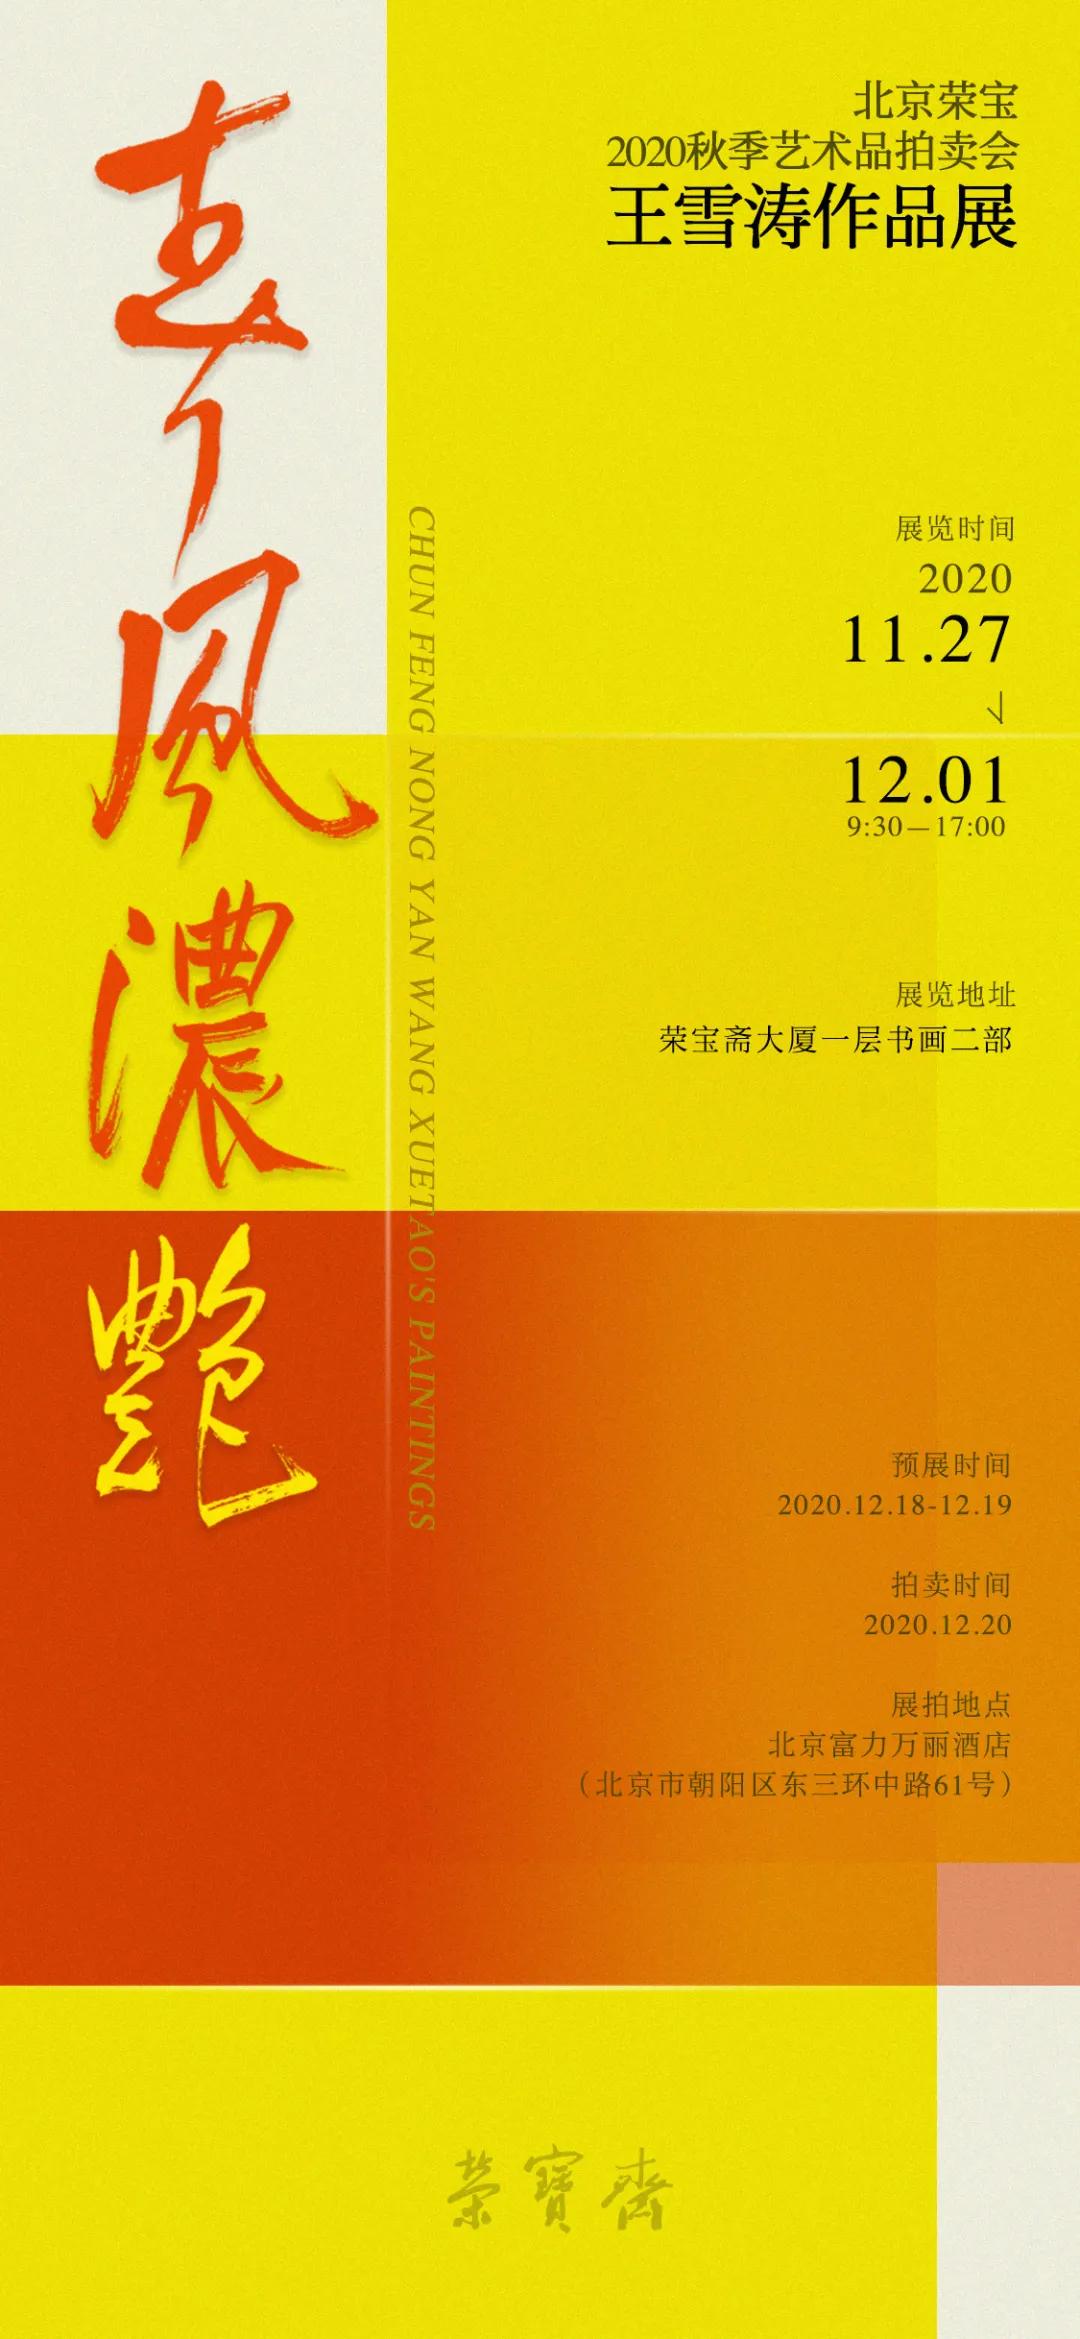 展讯 春风浓艳王雪涛作品展将于11月27日在荣宝斋大厦开展